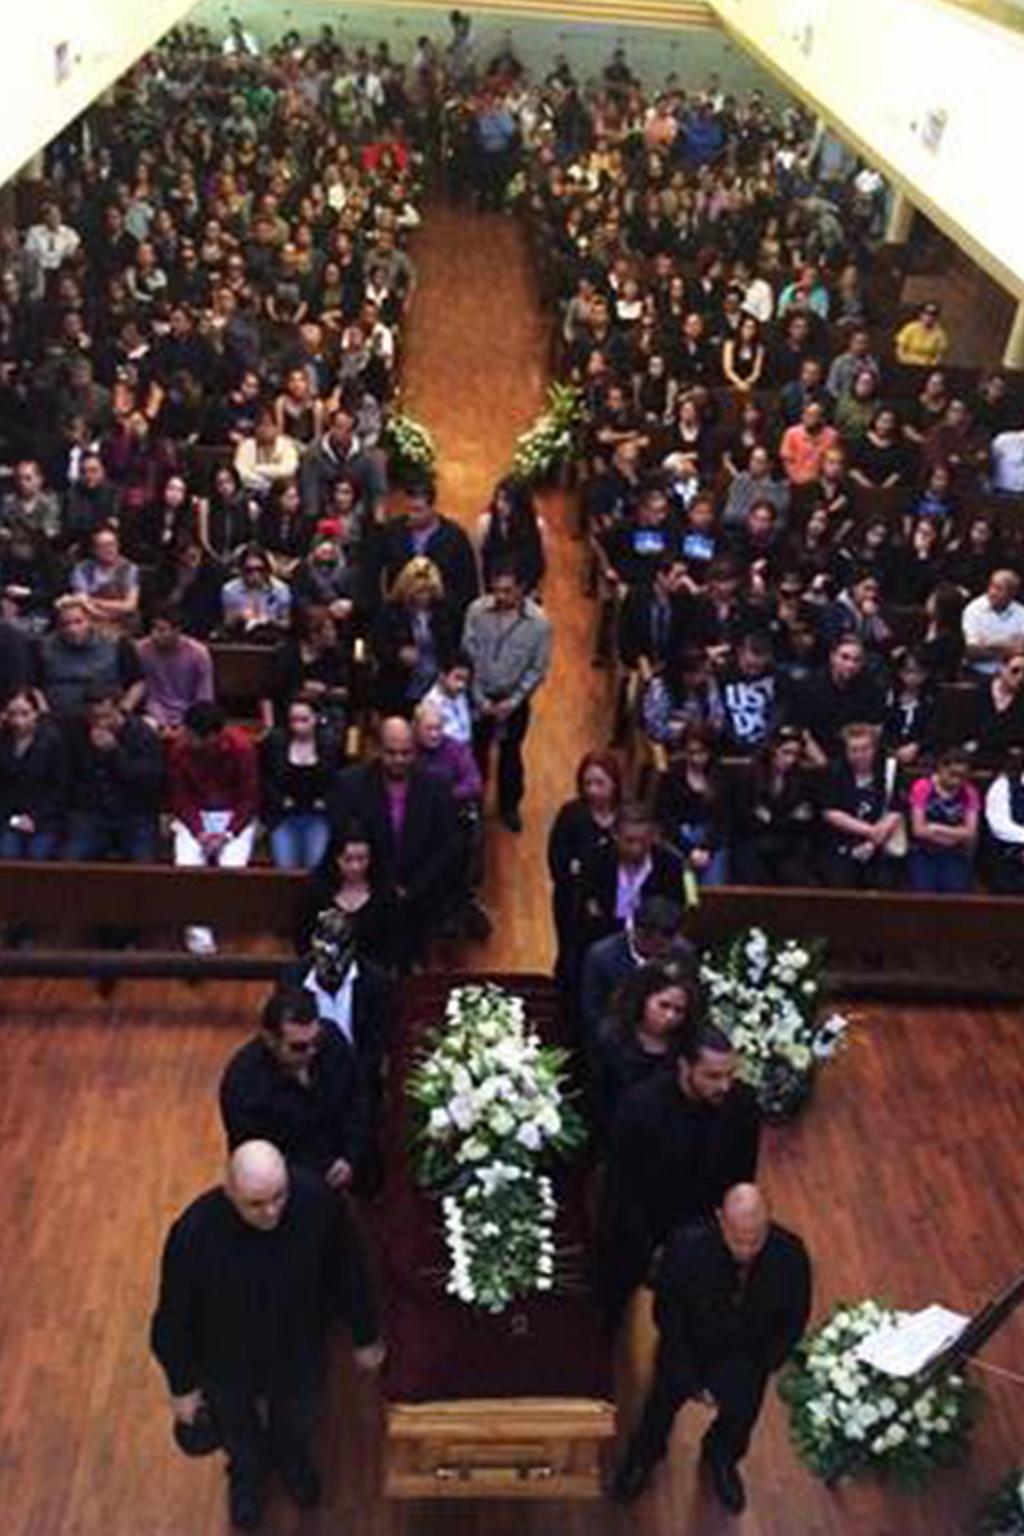 Familiares, amigos y luchadores se reunieron en Guadalajara para despidir al Hijo del Perro Aguayo en una misa de cuerpo presente. (Notimex)